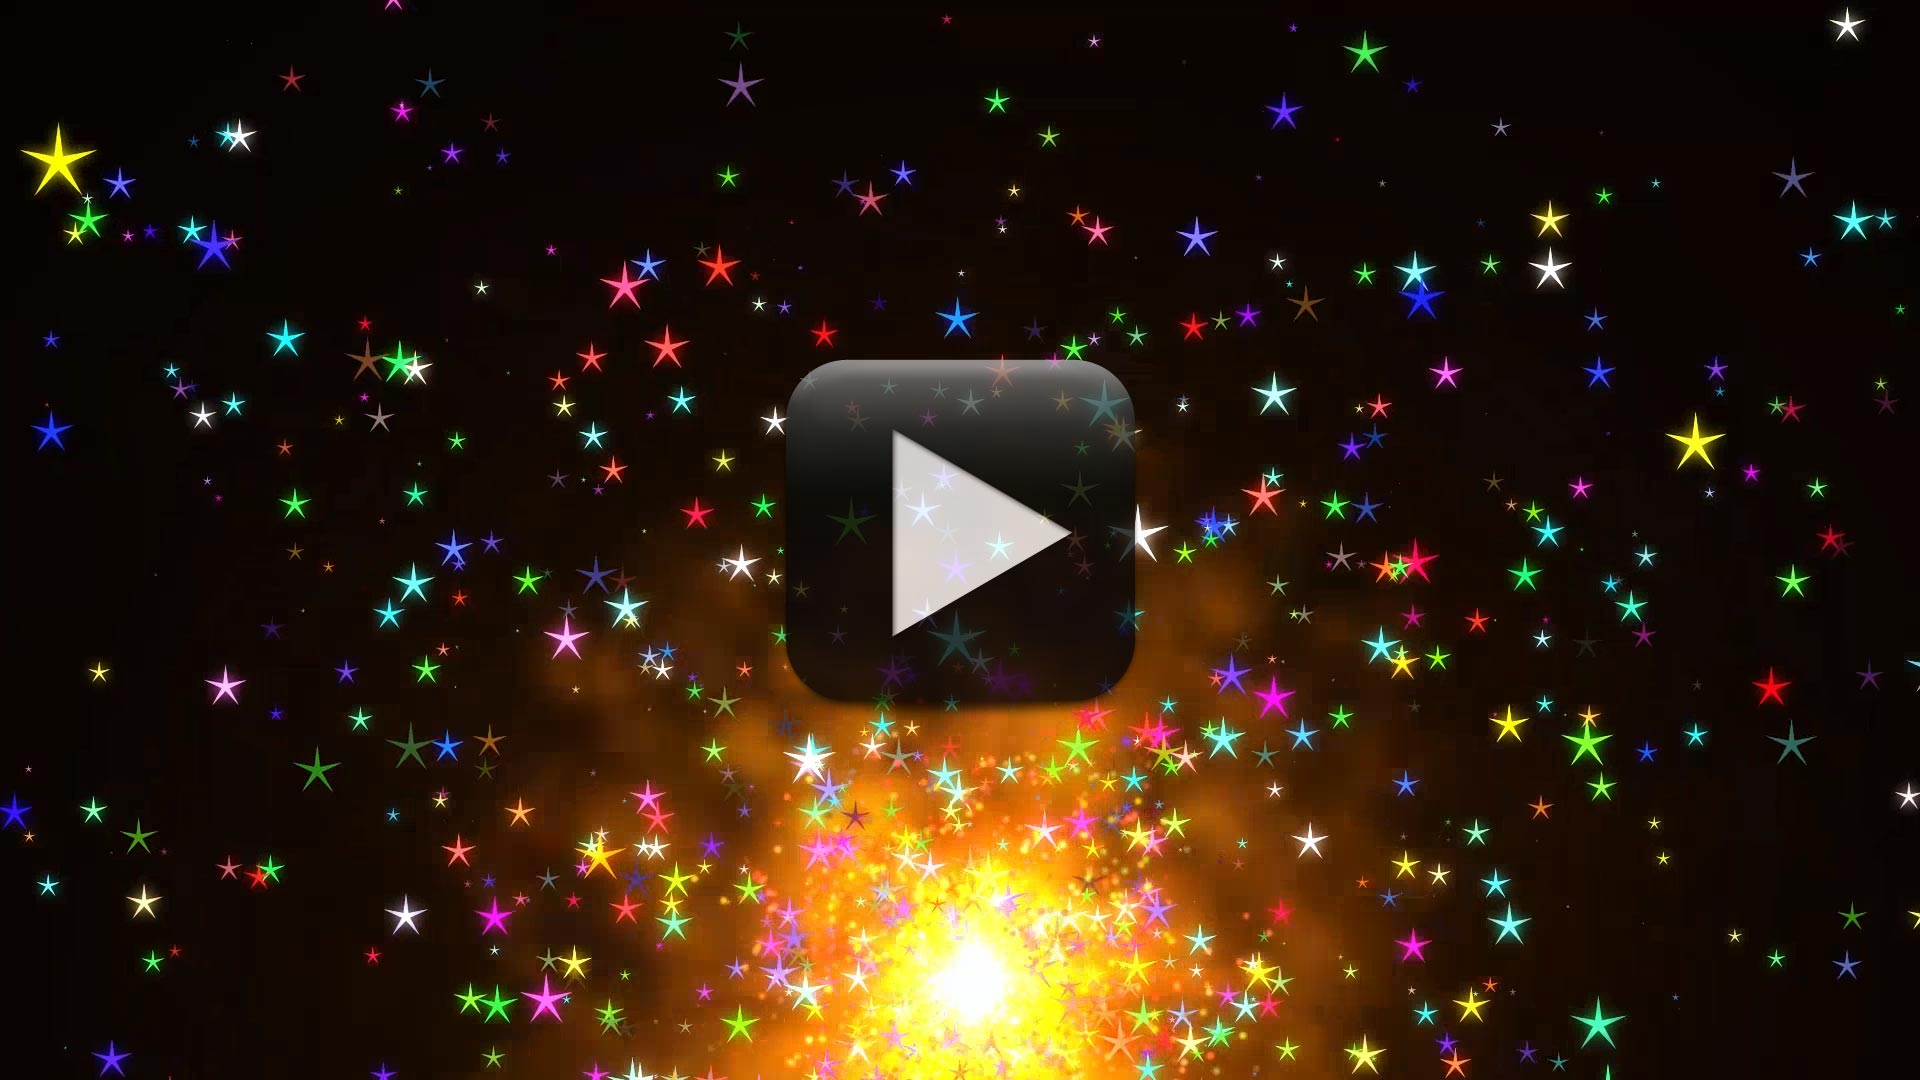 Hiệu ứng Video nền sao - Đón xem video để trải nghiệm không gian cuộn tròn, đầy màu sắc của hiệu ứng video nền sao. Với điểm nhấn là sự trùng hợp giữa hiệu ứng sao và âm thanh sống động, bộ sưu tập video này sẽ đem lại cho bạn những trải nghiệm đầy ấn tượng.